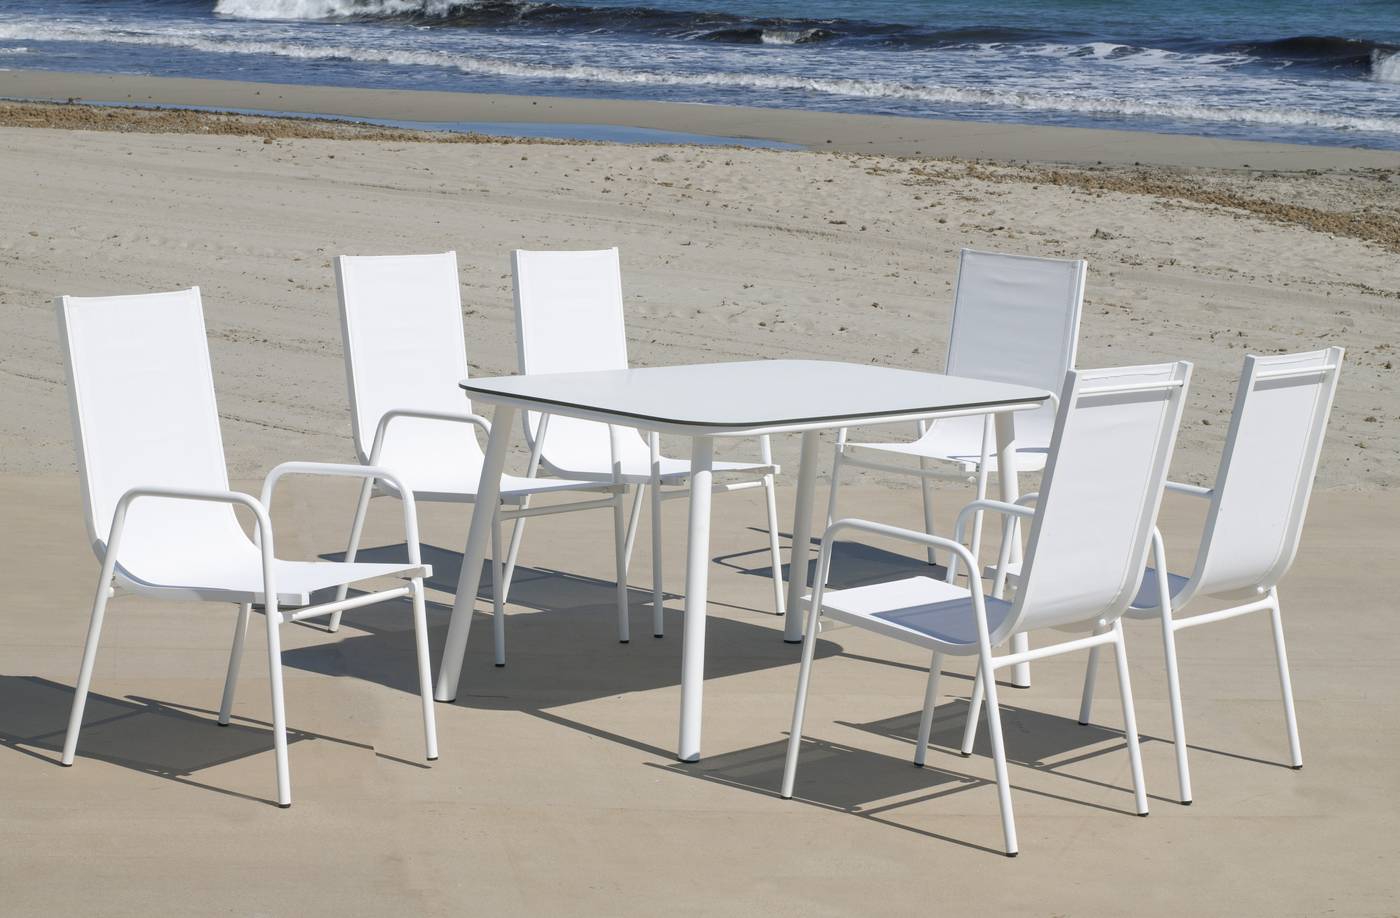 Conjunto aluminio para jardín: Mesa rectangular con tablero HPL de 150 cm + 4 sillones de textilen. Colores: blanco y antracita.